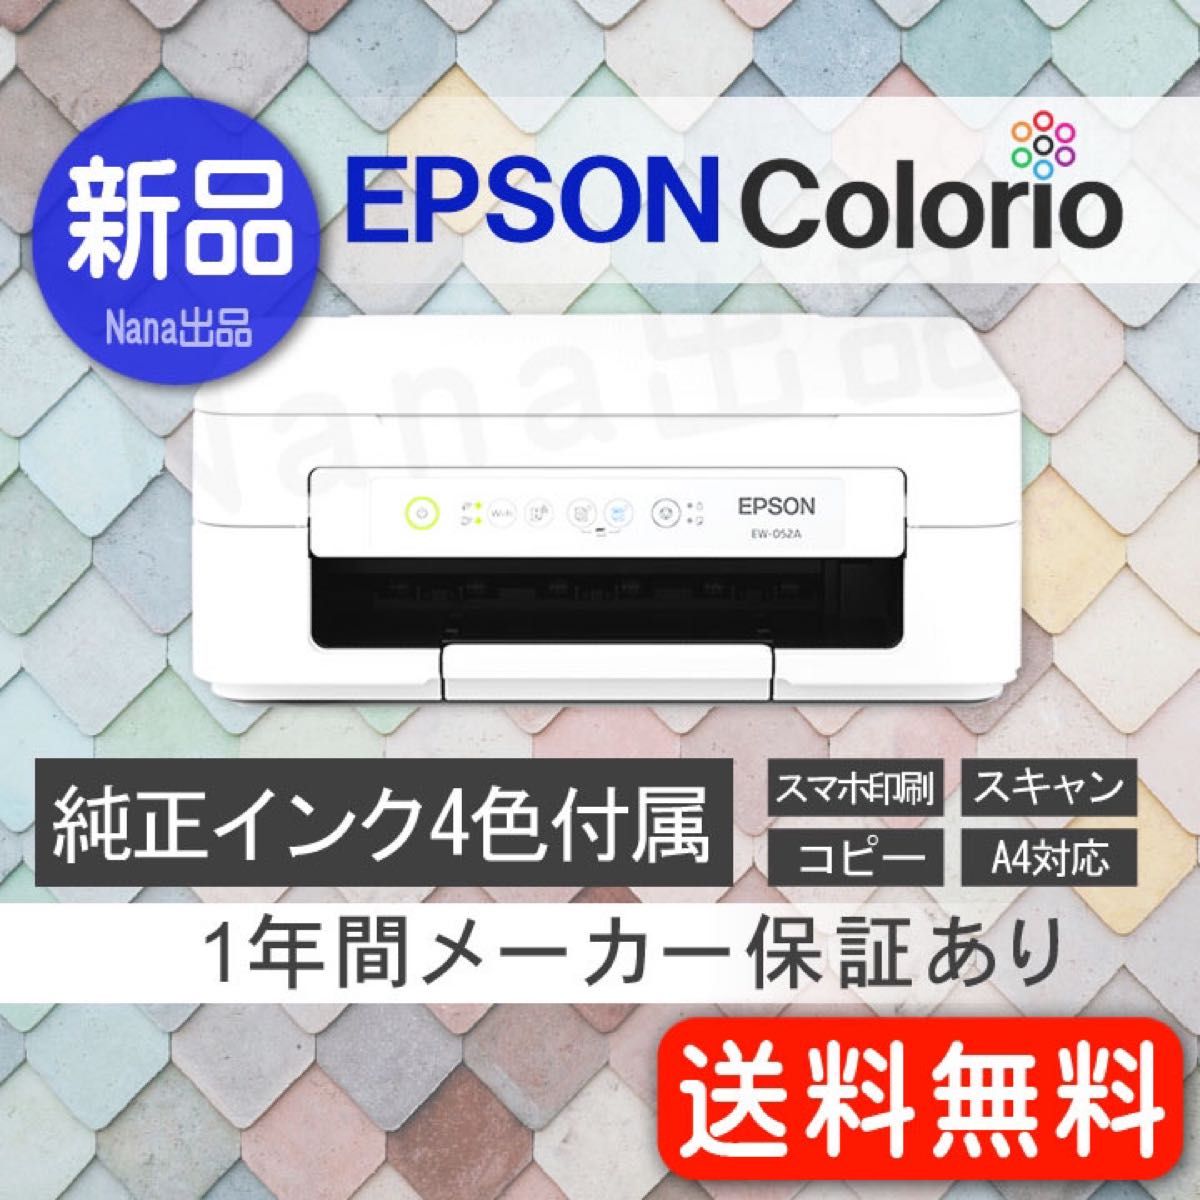 EPSON 新品 プリンター 本体 コピー機 複合機 エプソン EW052A